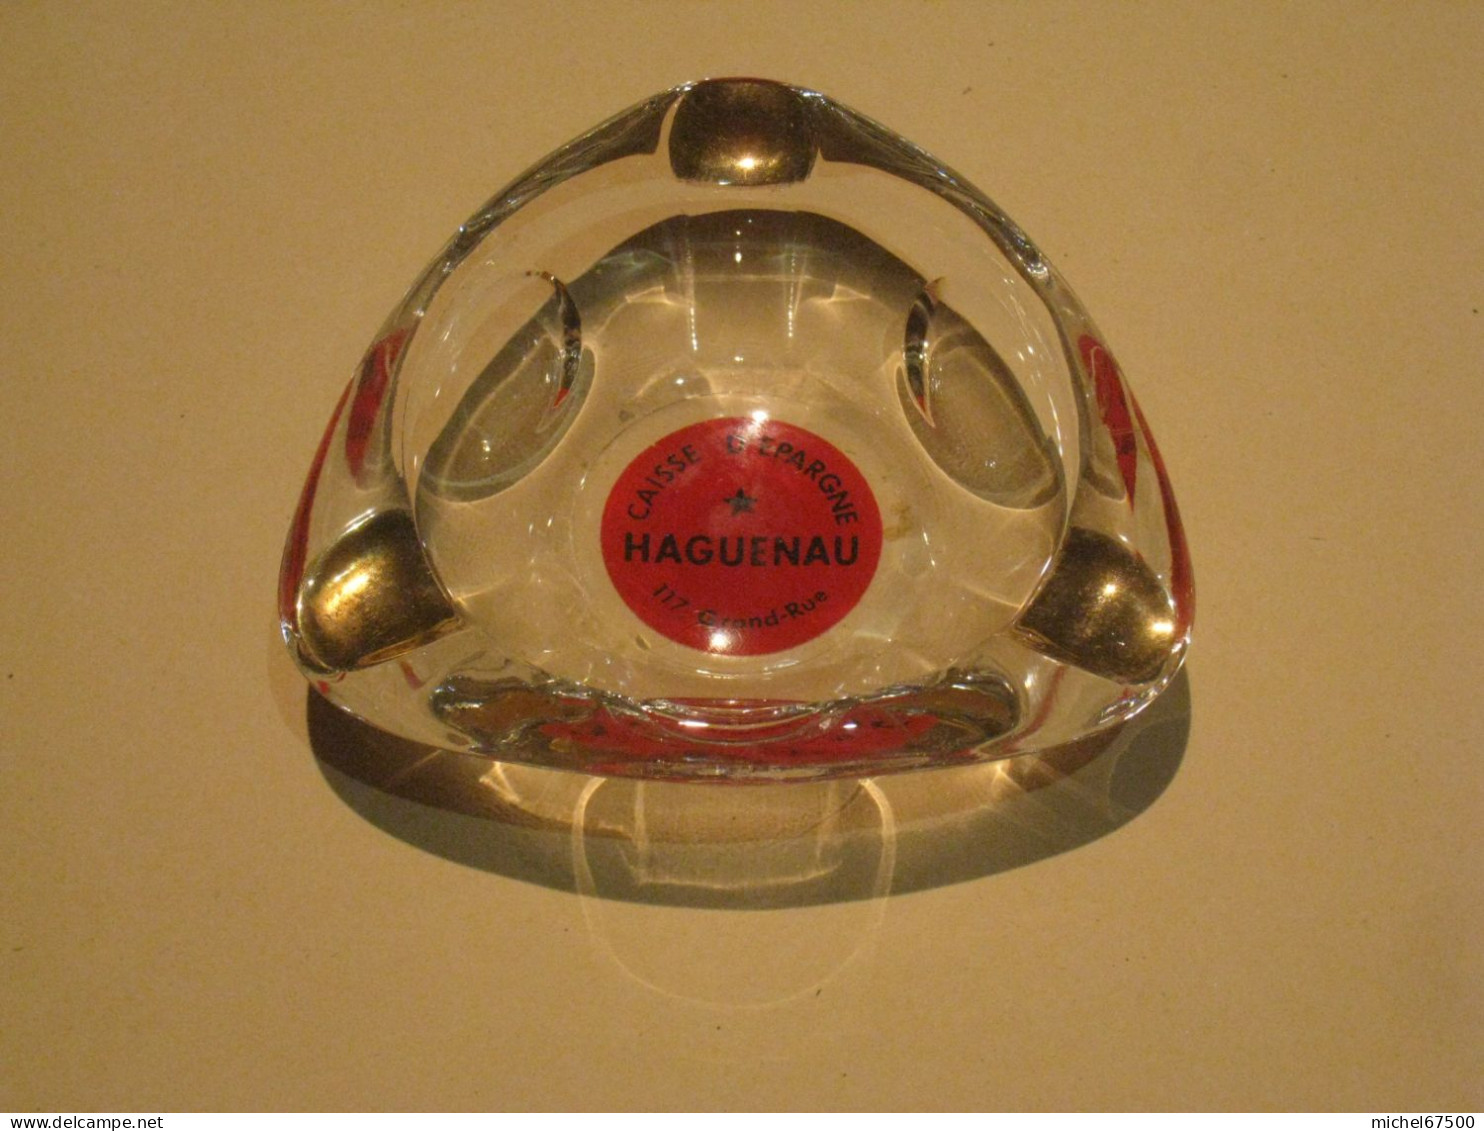 Cendrier CAISSE D’EPARGNE HAGUENAU - Glass